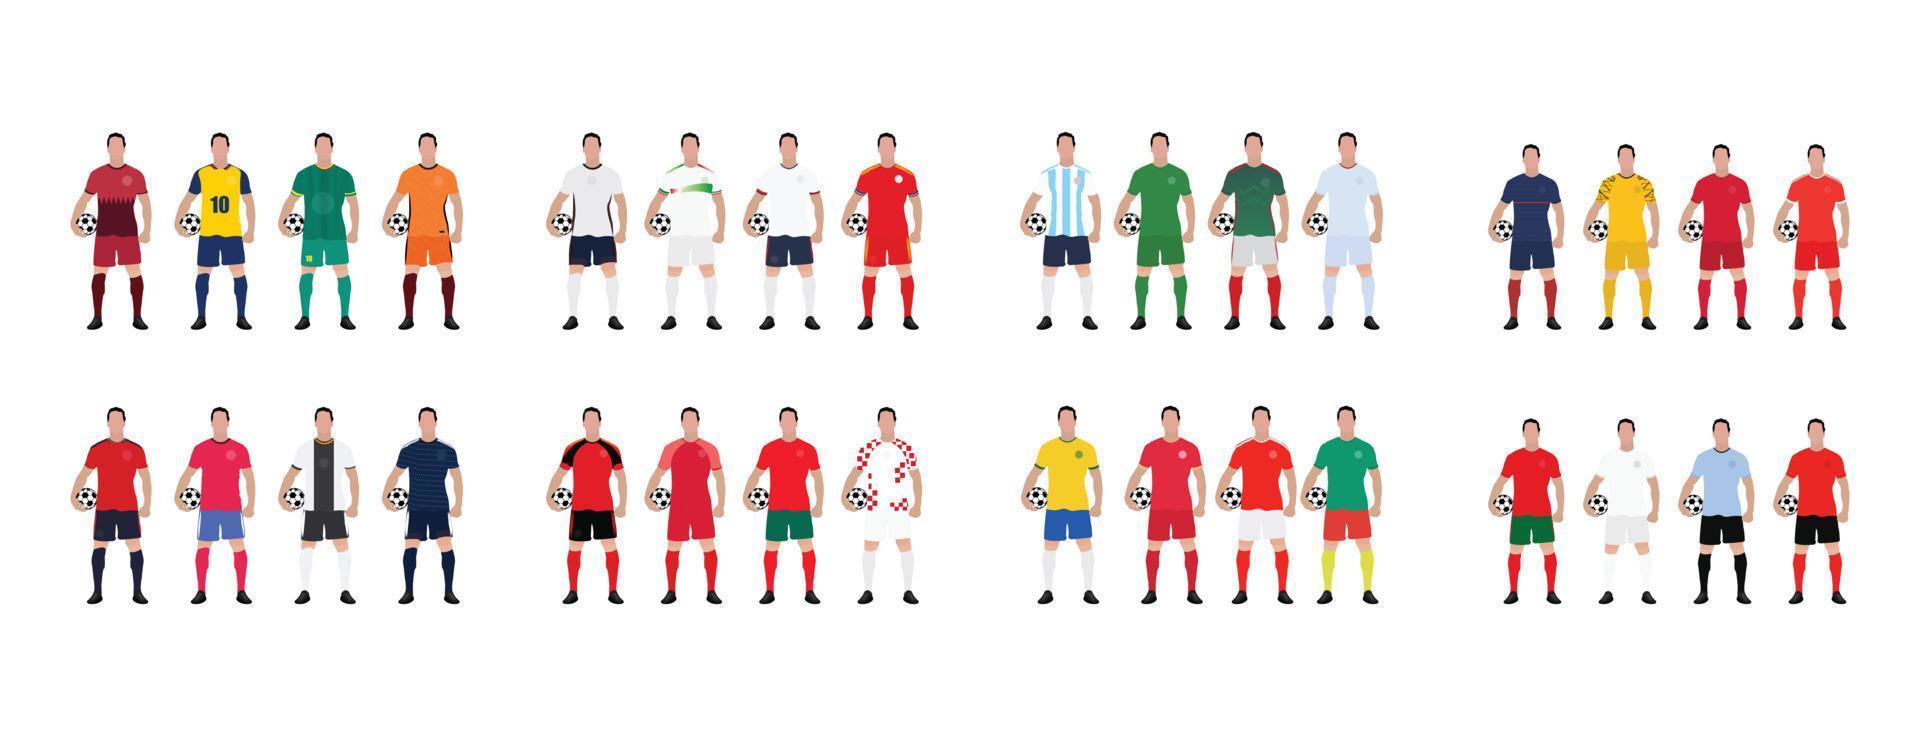 campeonato mundial de fútbol todos los equipos con su kit de equipo vector